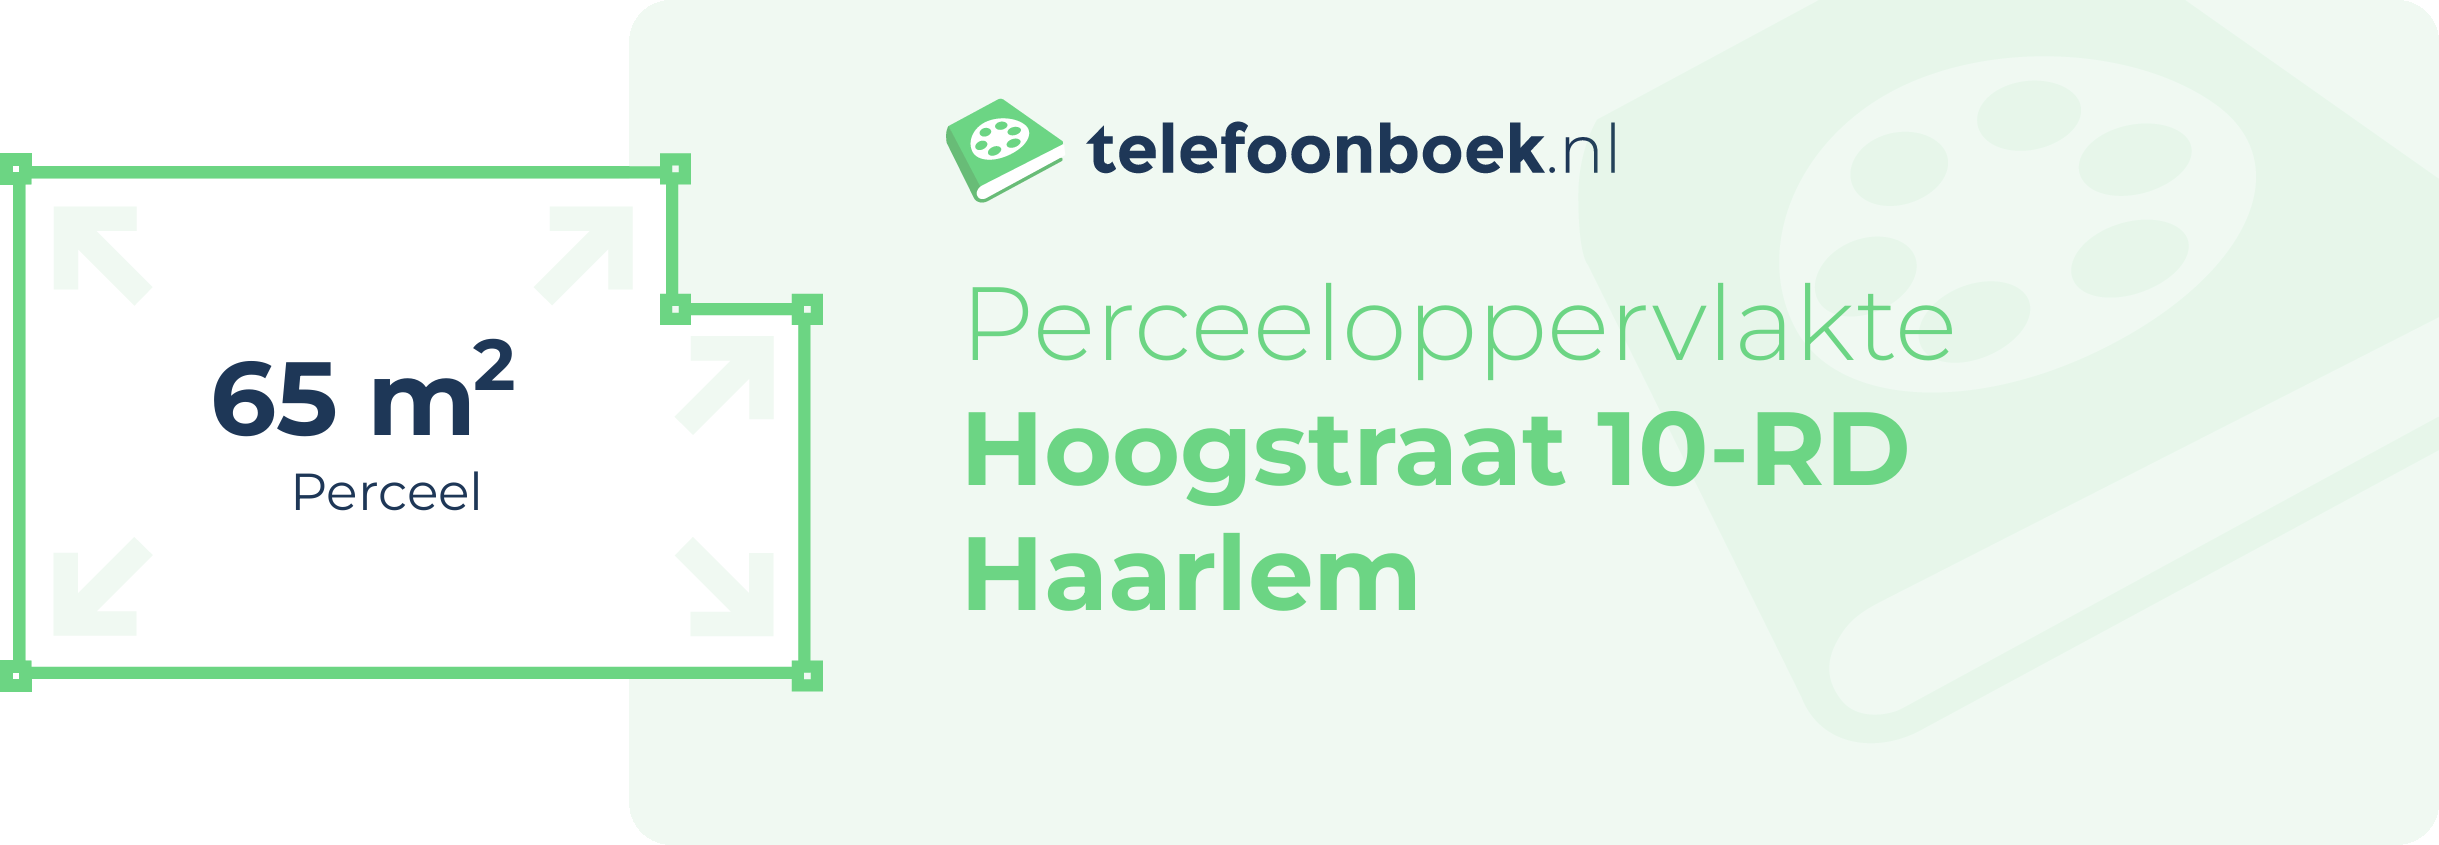 Perceeloppervlakte Hoogstraat 10-RD Haarlem